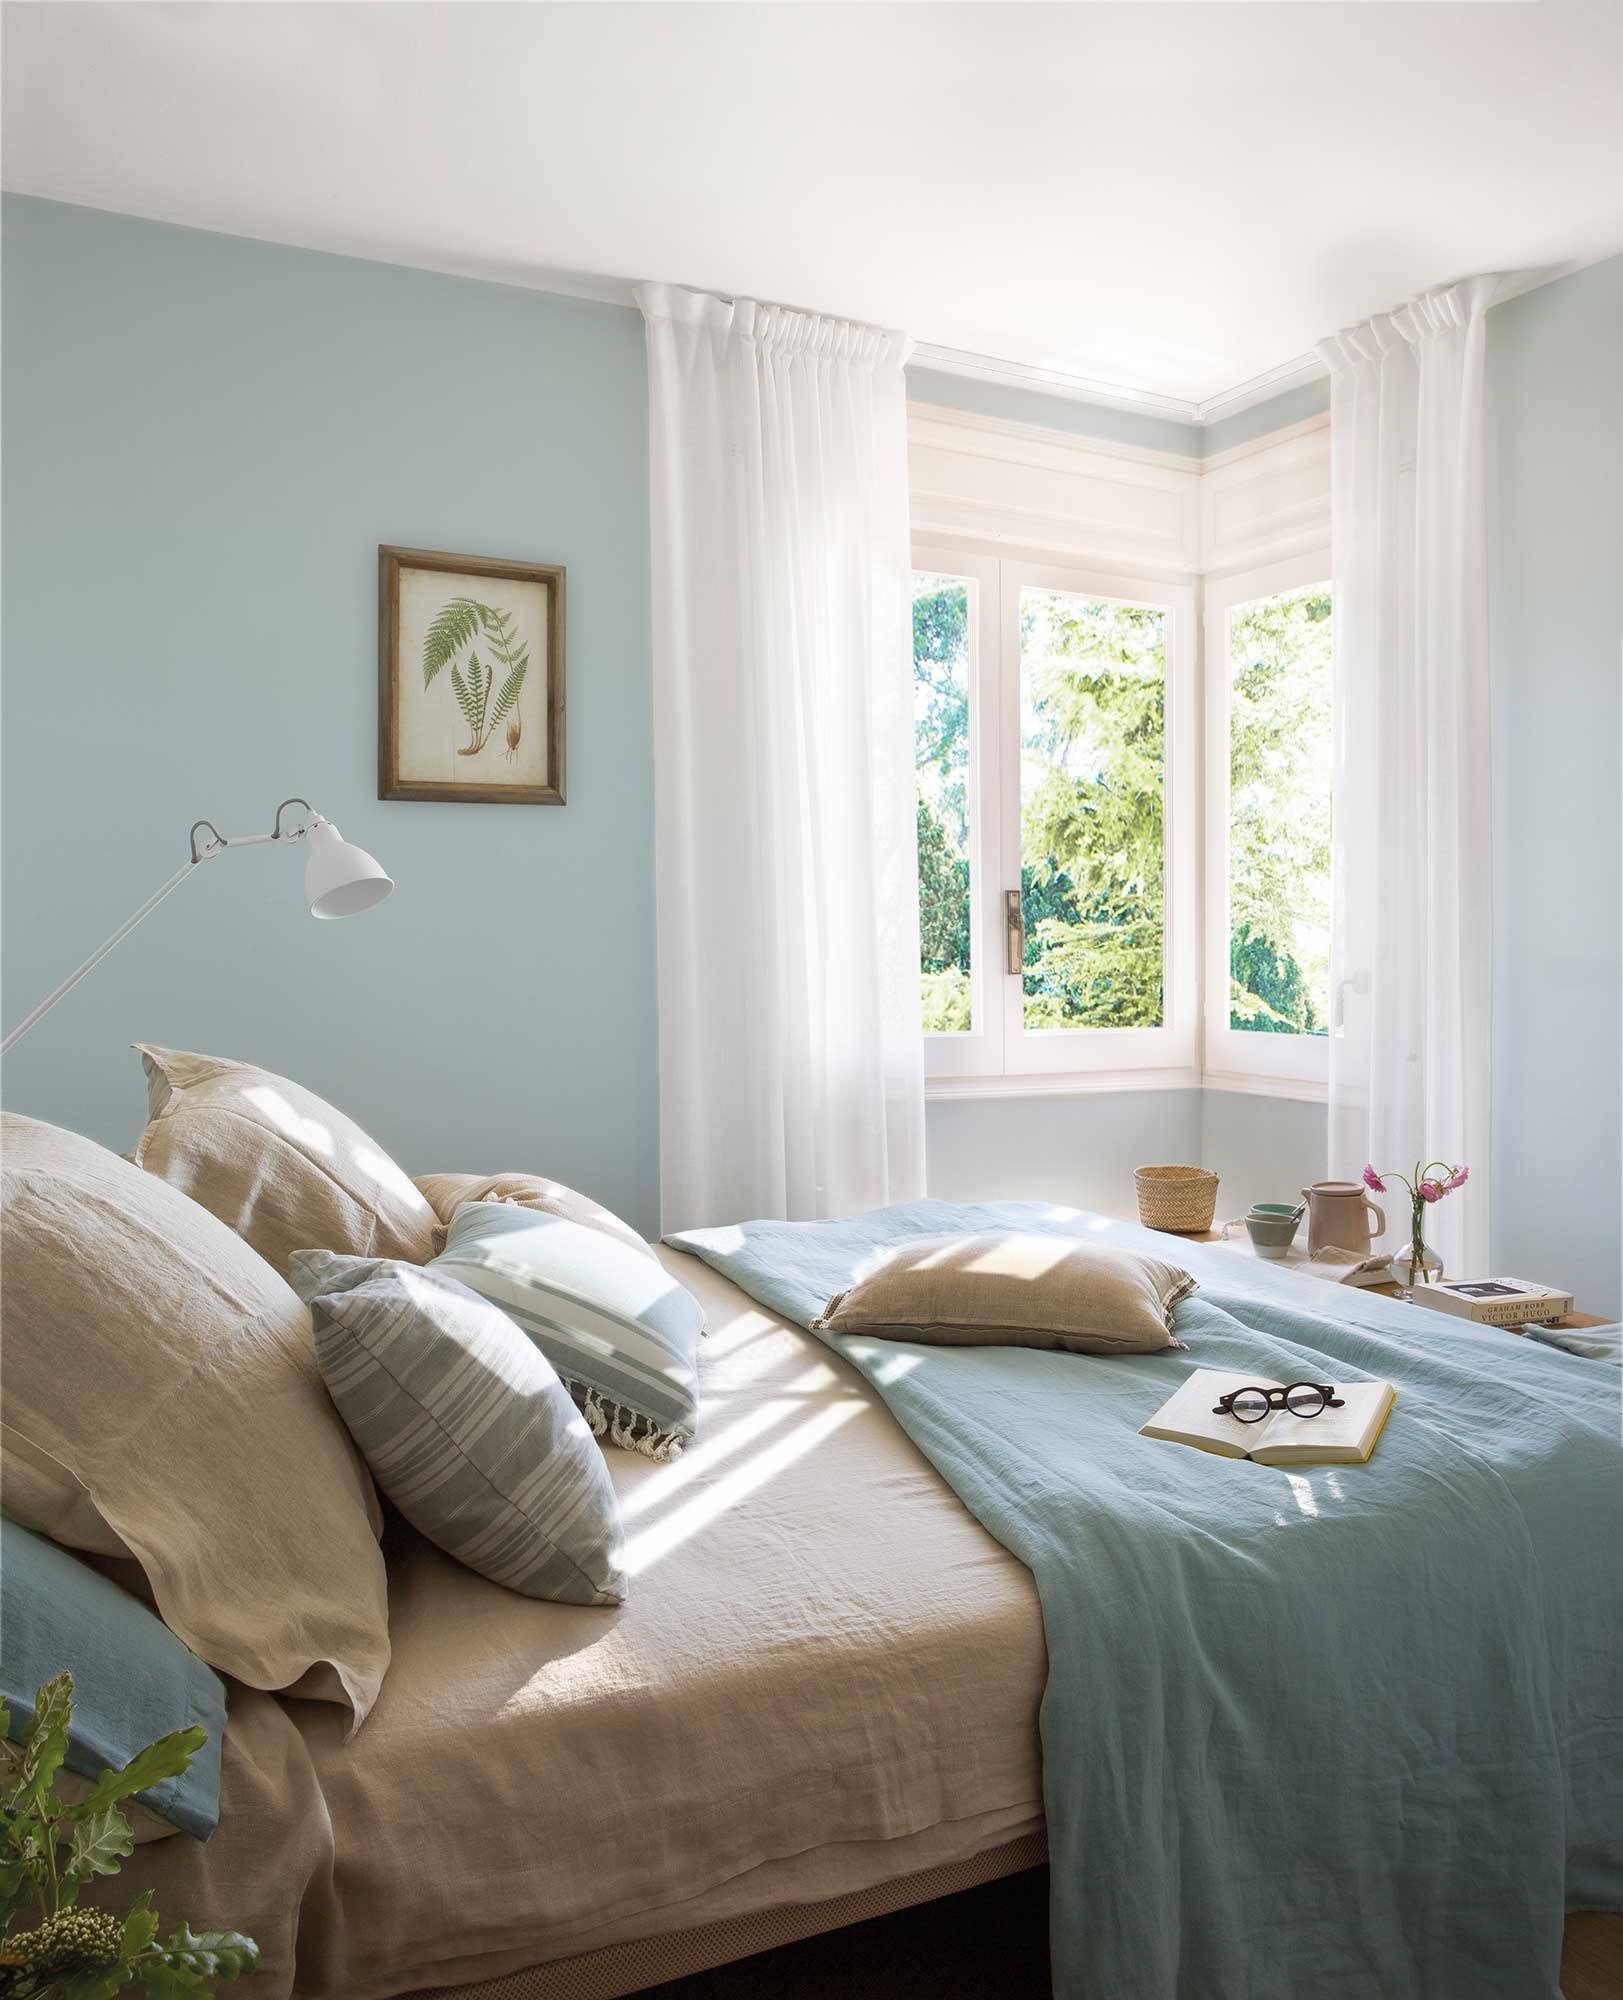 31 dormitorios decorados en azul: con pintura, papel pintado, textiles